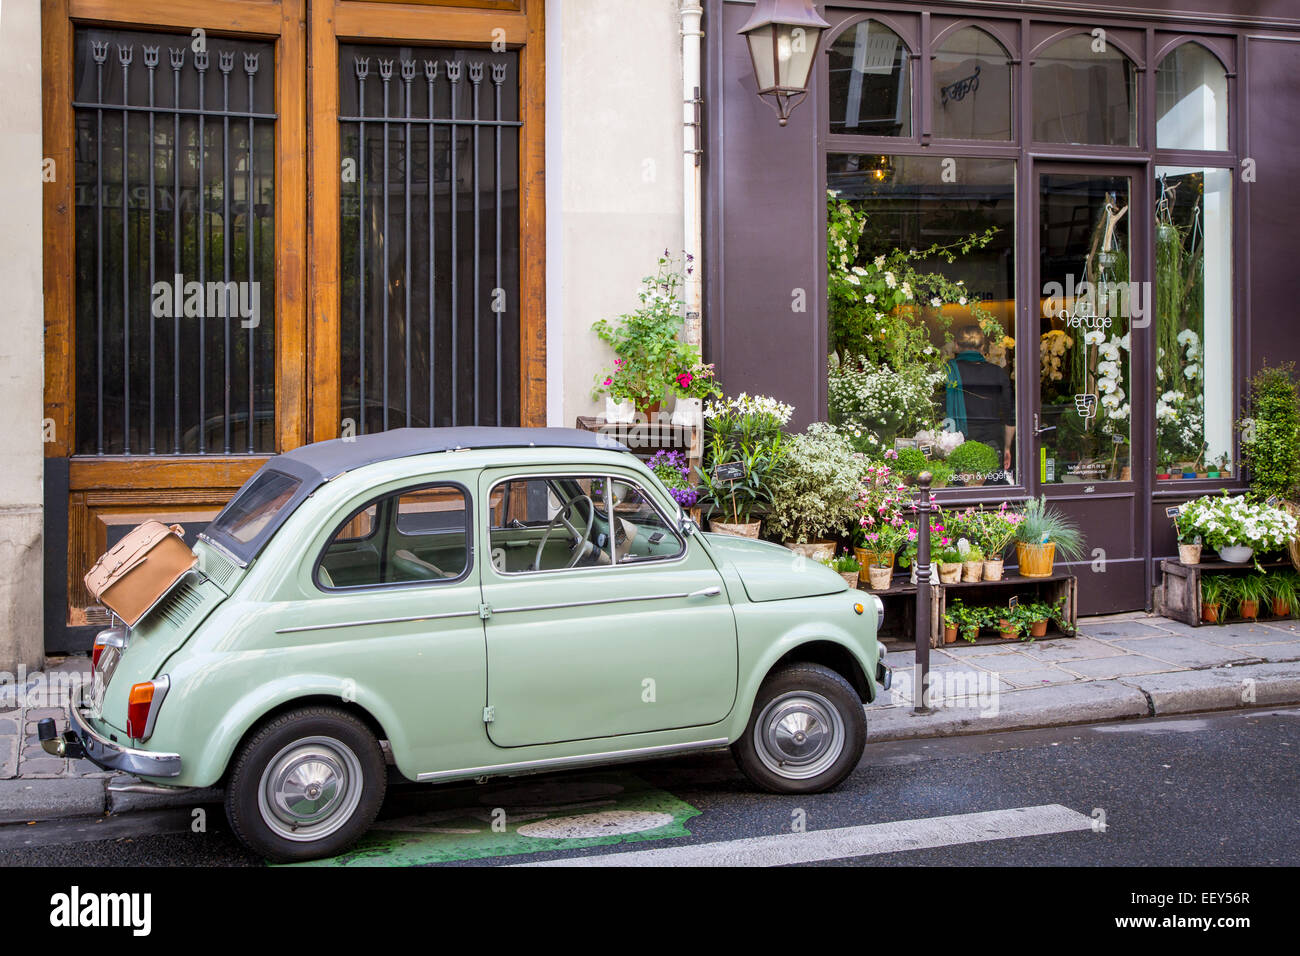 Fiat parked on the sidewalk at the florist shop, Les Marais, Paris, France Stock Photo